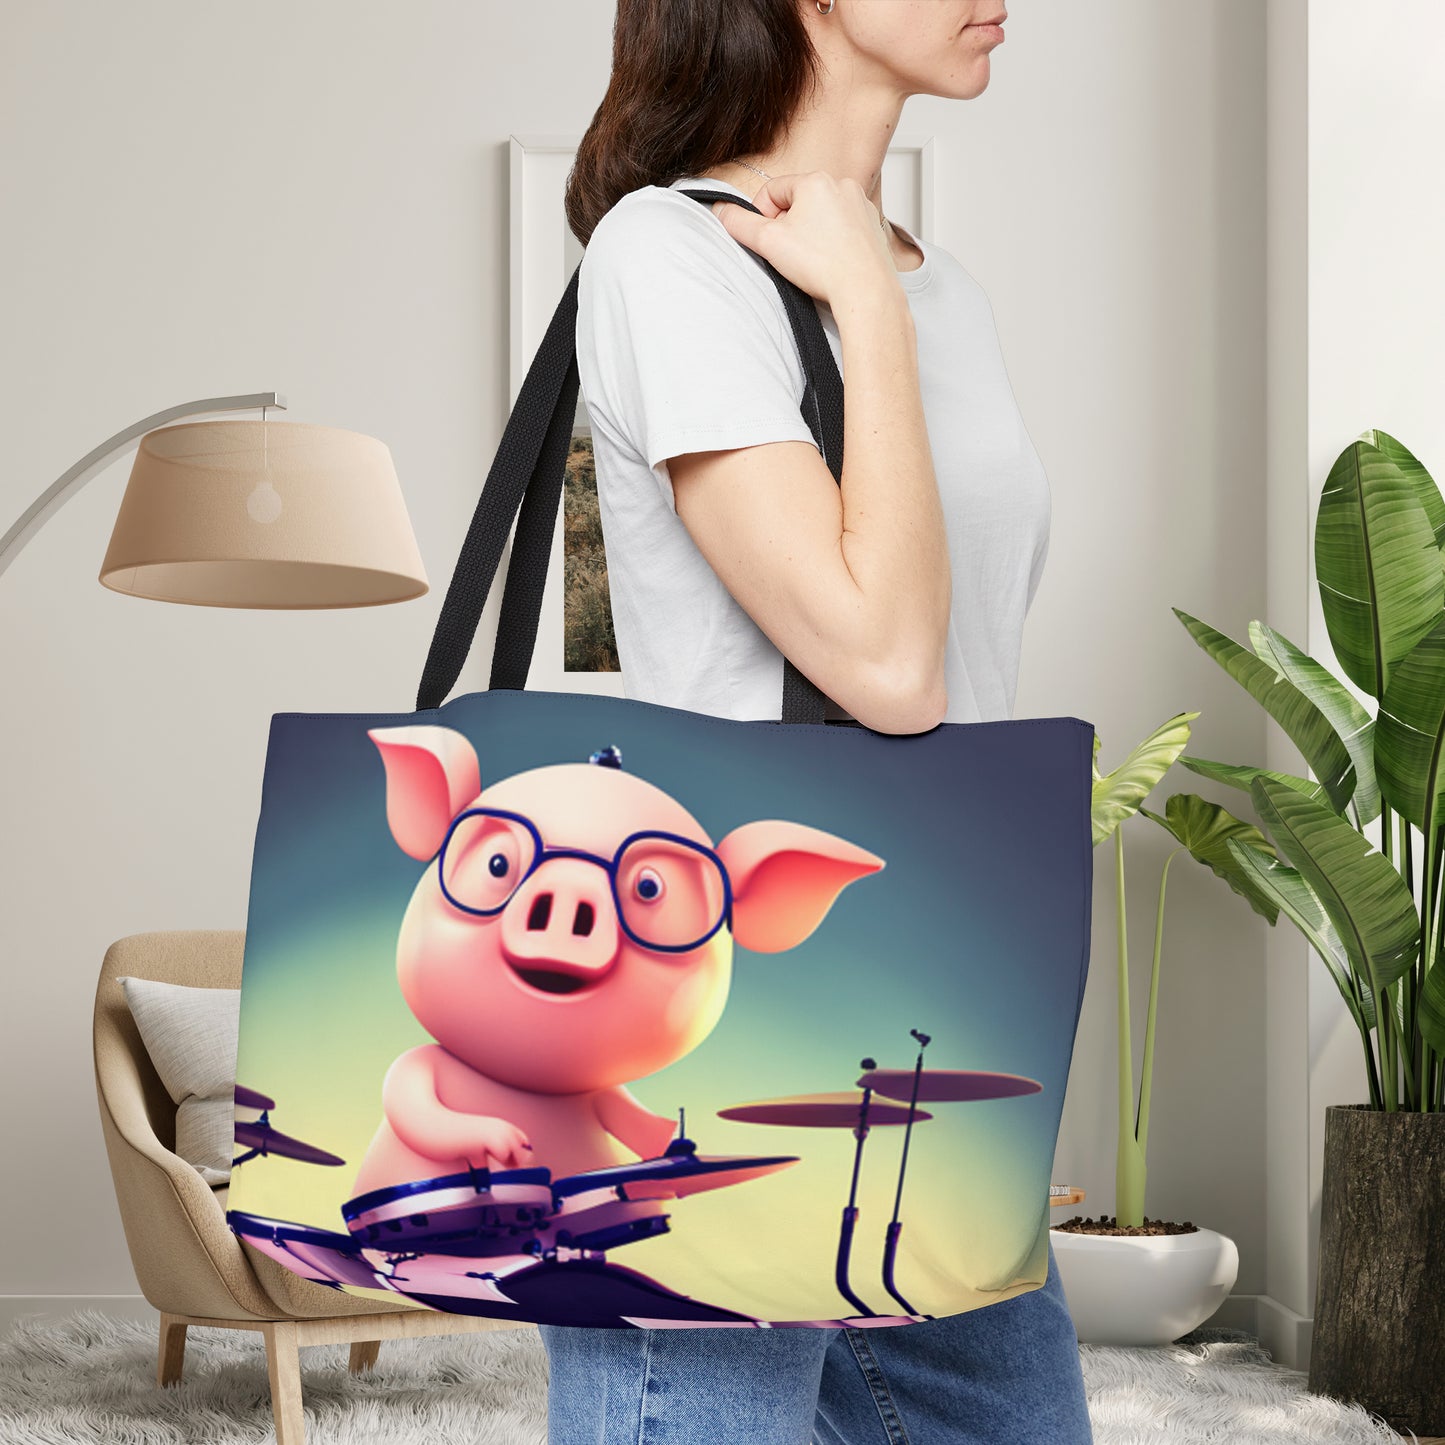 Cute pig drummer inspired design on this Weekender Tote Bag.